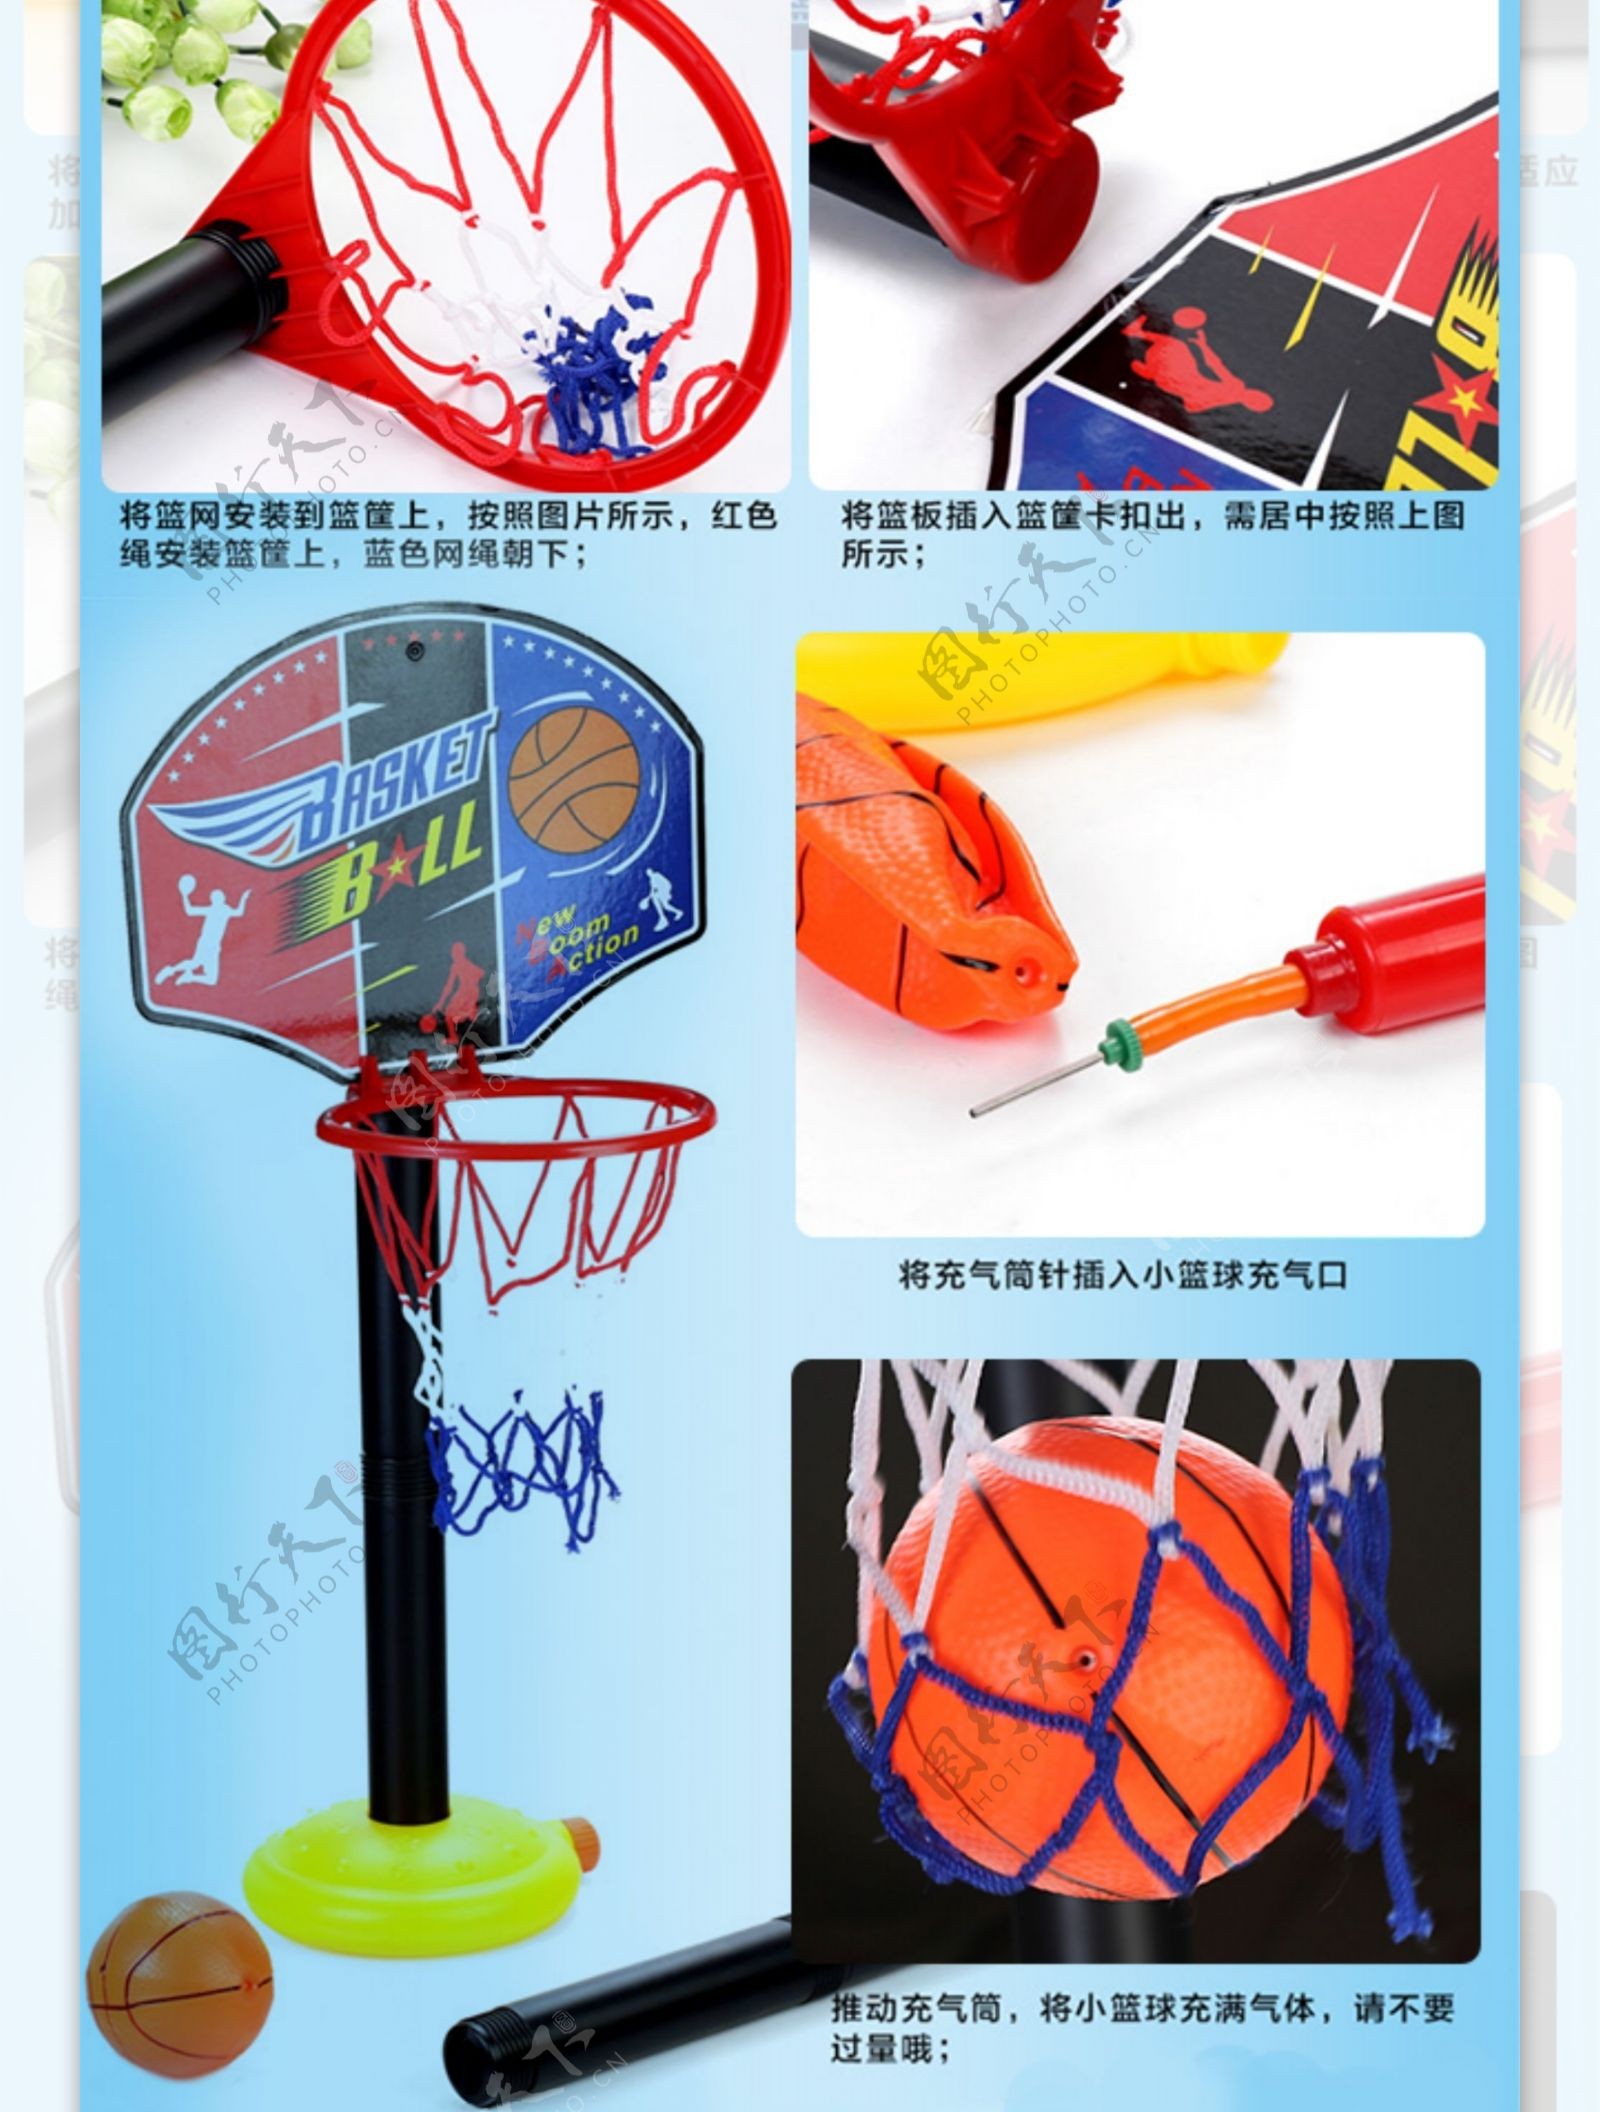 儿童篮球架详情页模版